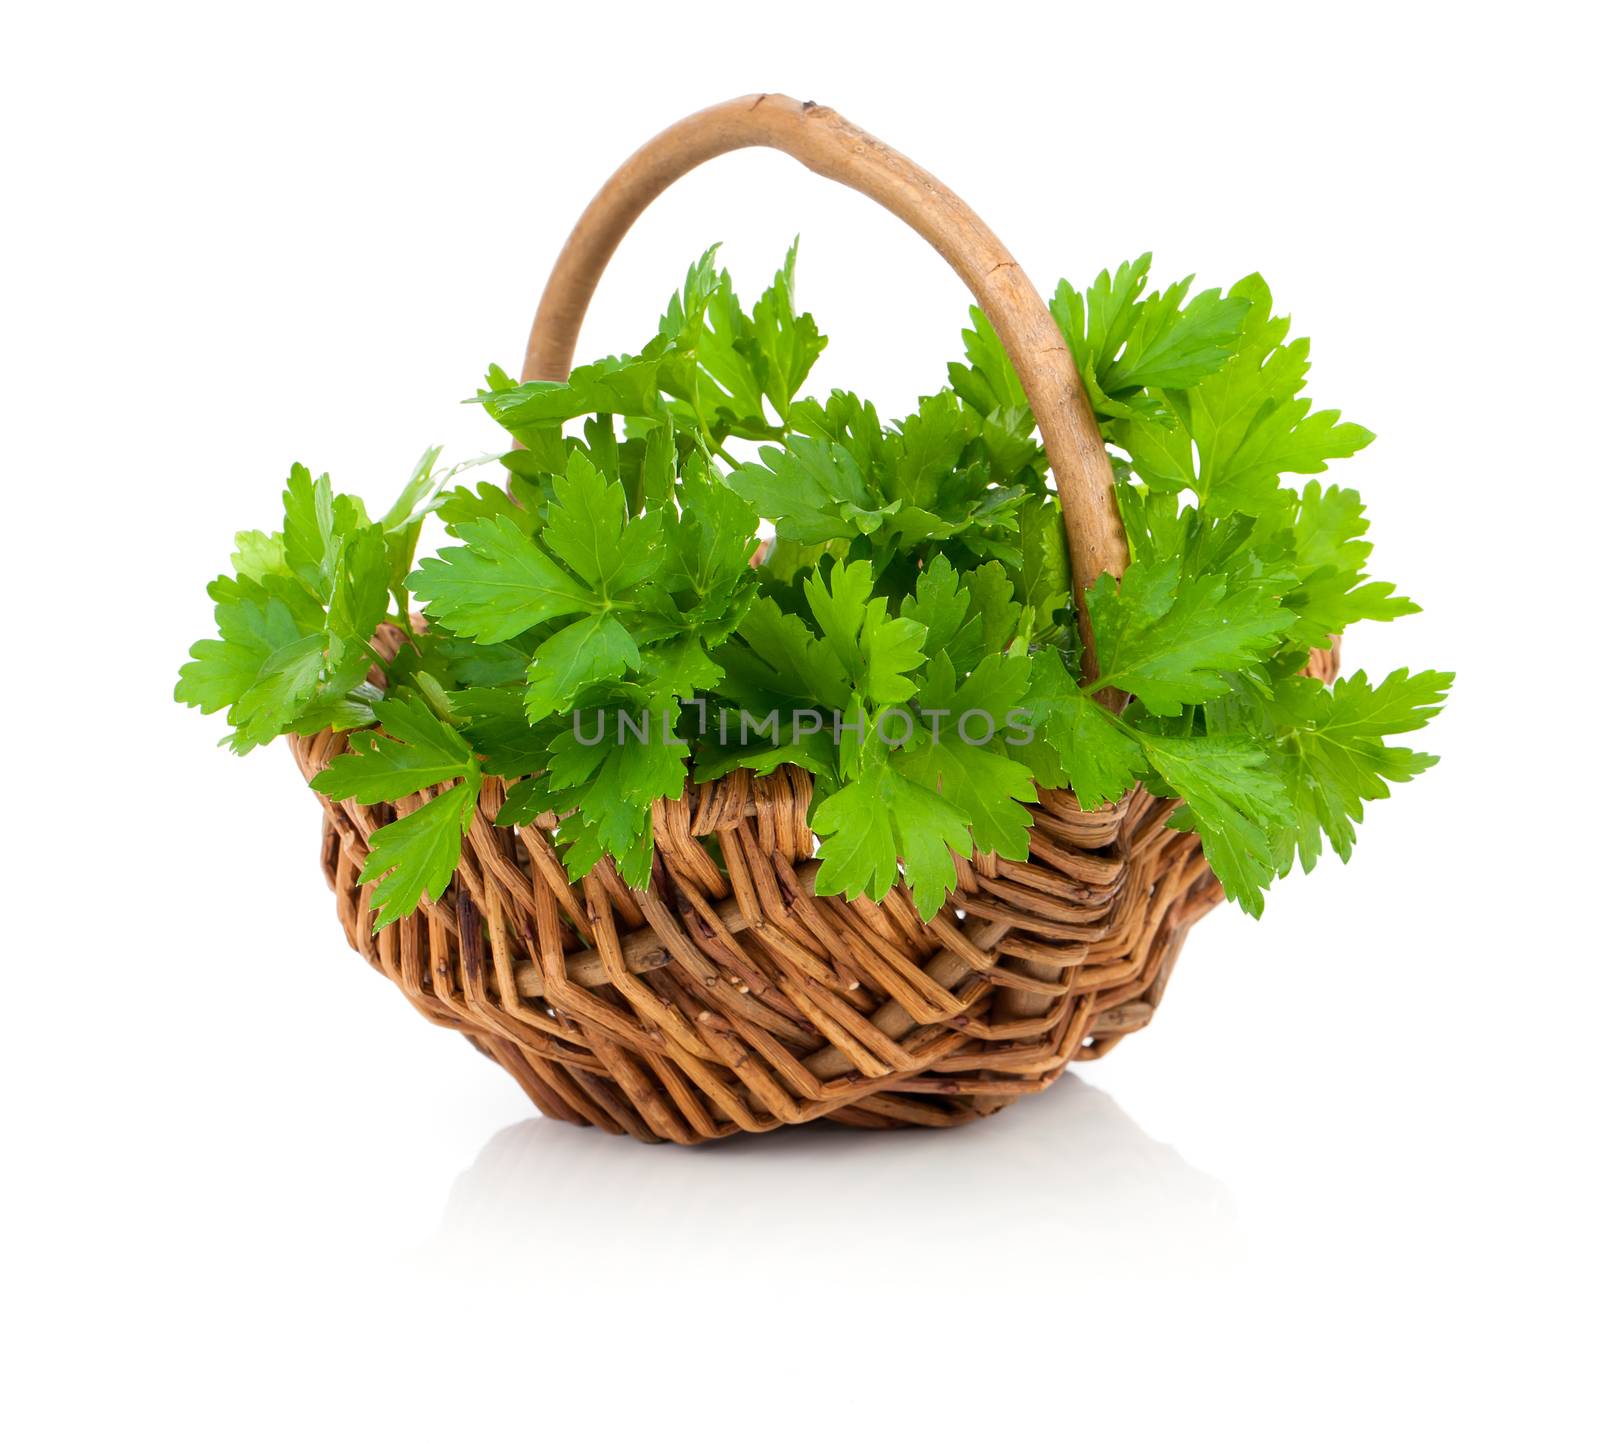 Bundle of fresh parsley in a wicker basket, on a white backgroun by motorolka